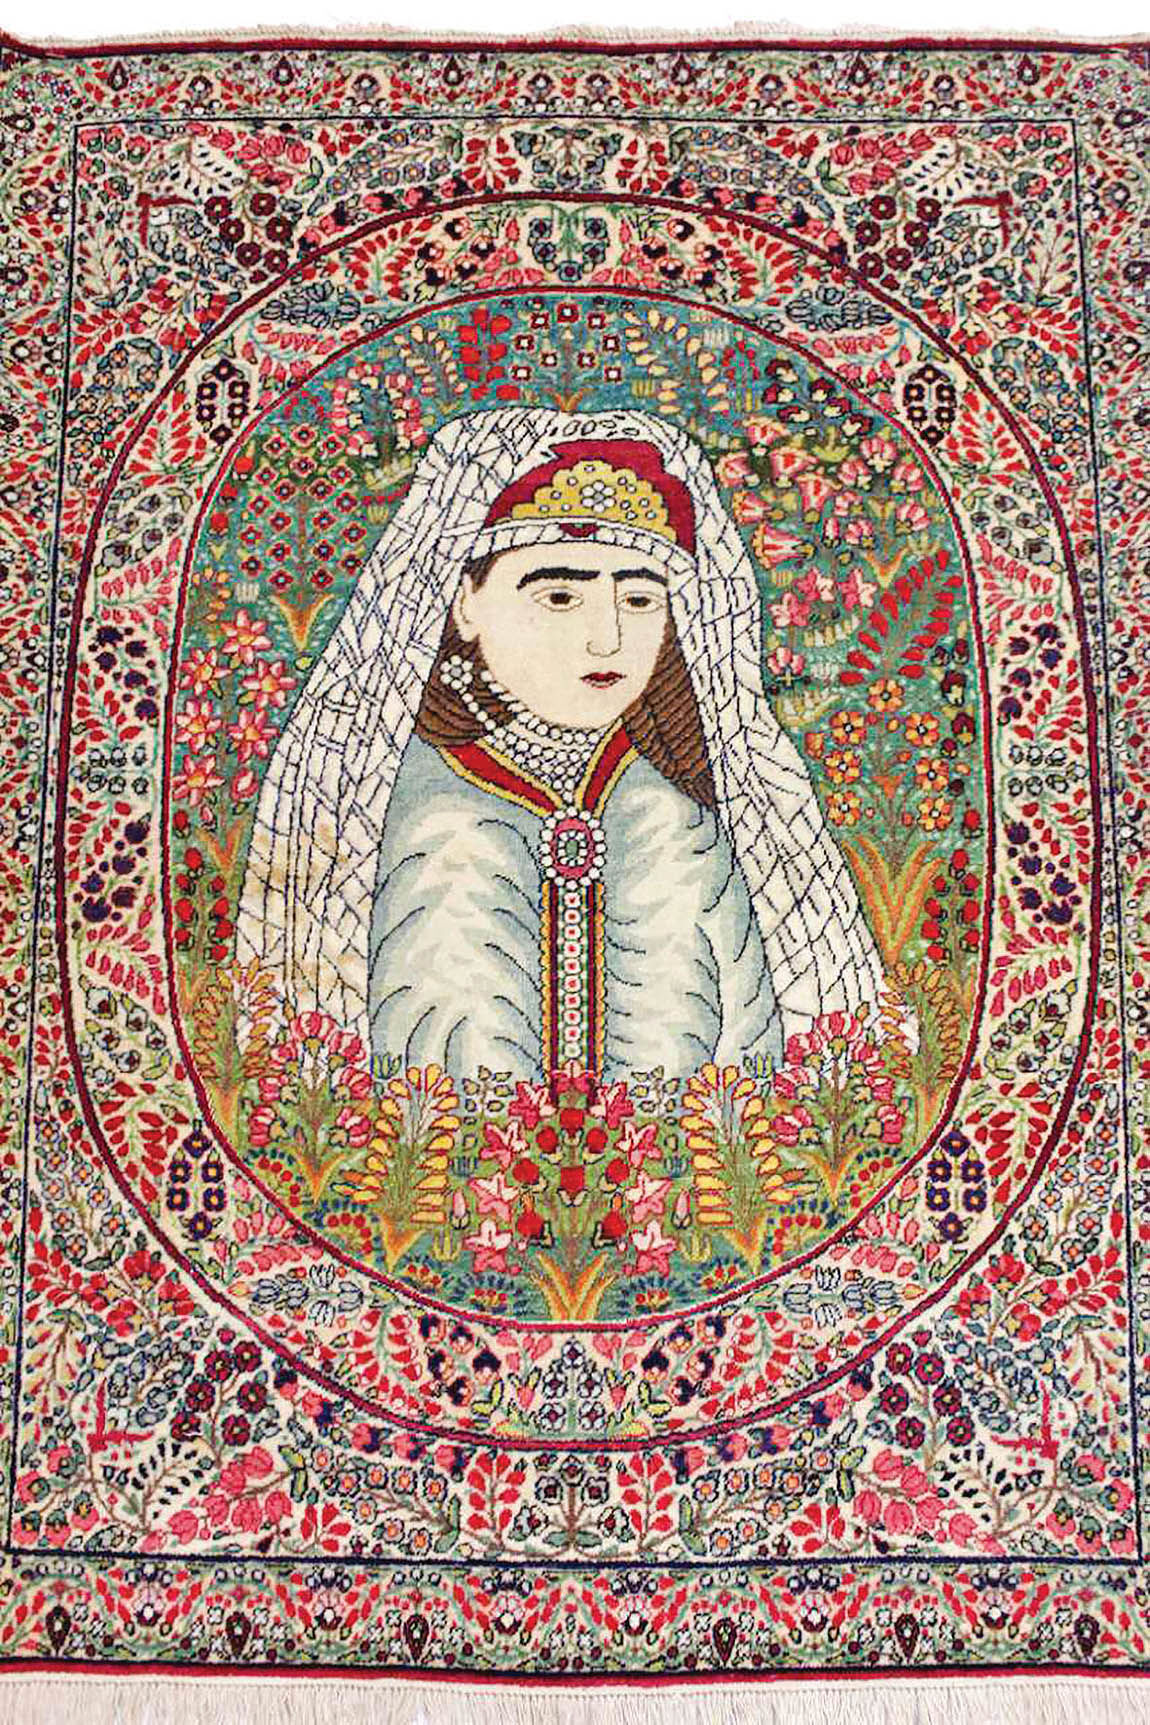 داستان فرش در دوره قاجار 